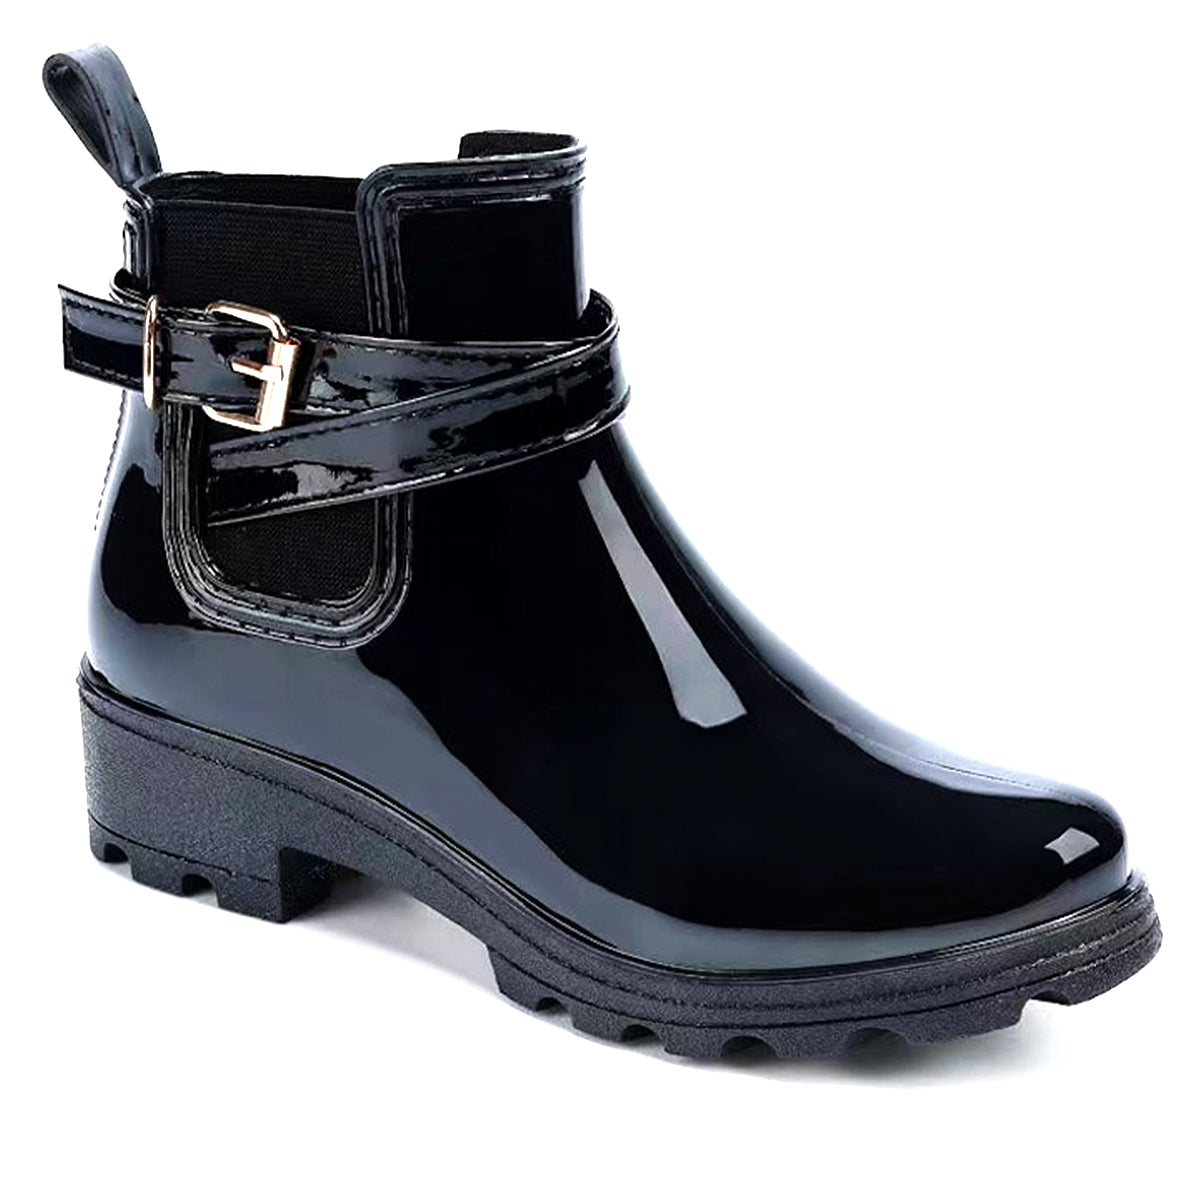 Alana Buckled Strap Gumboot Rain Waterproof Boots